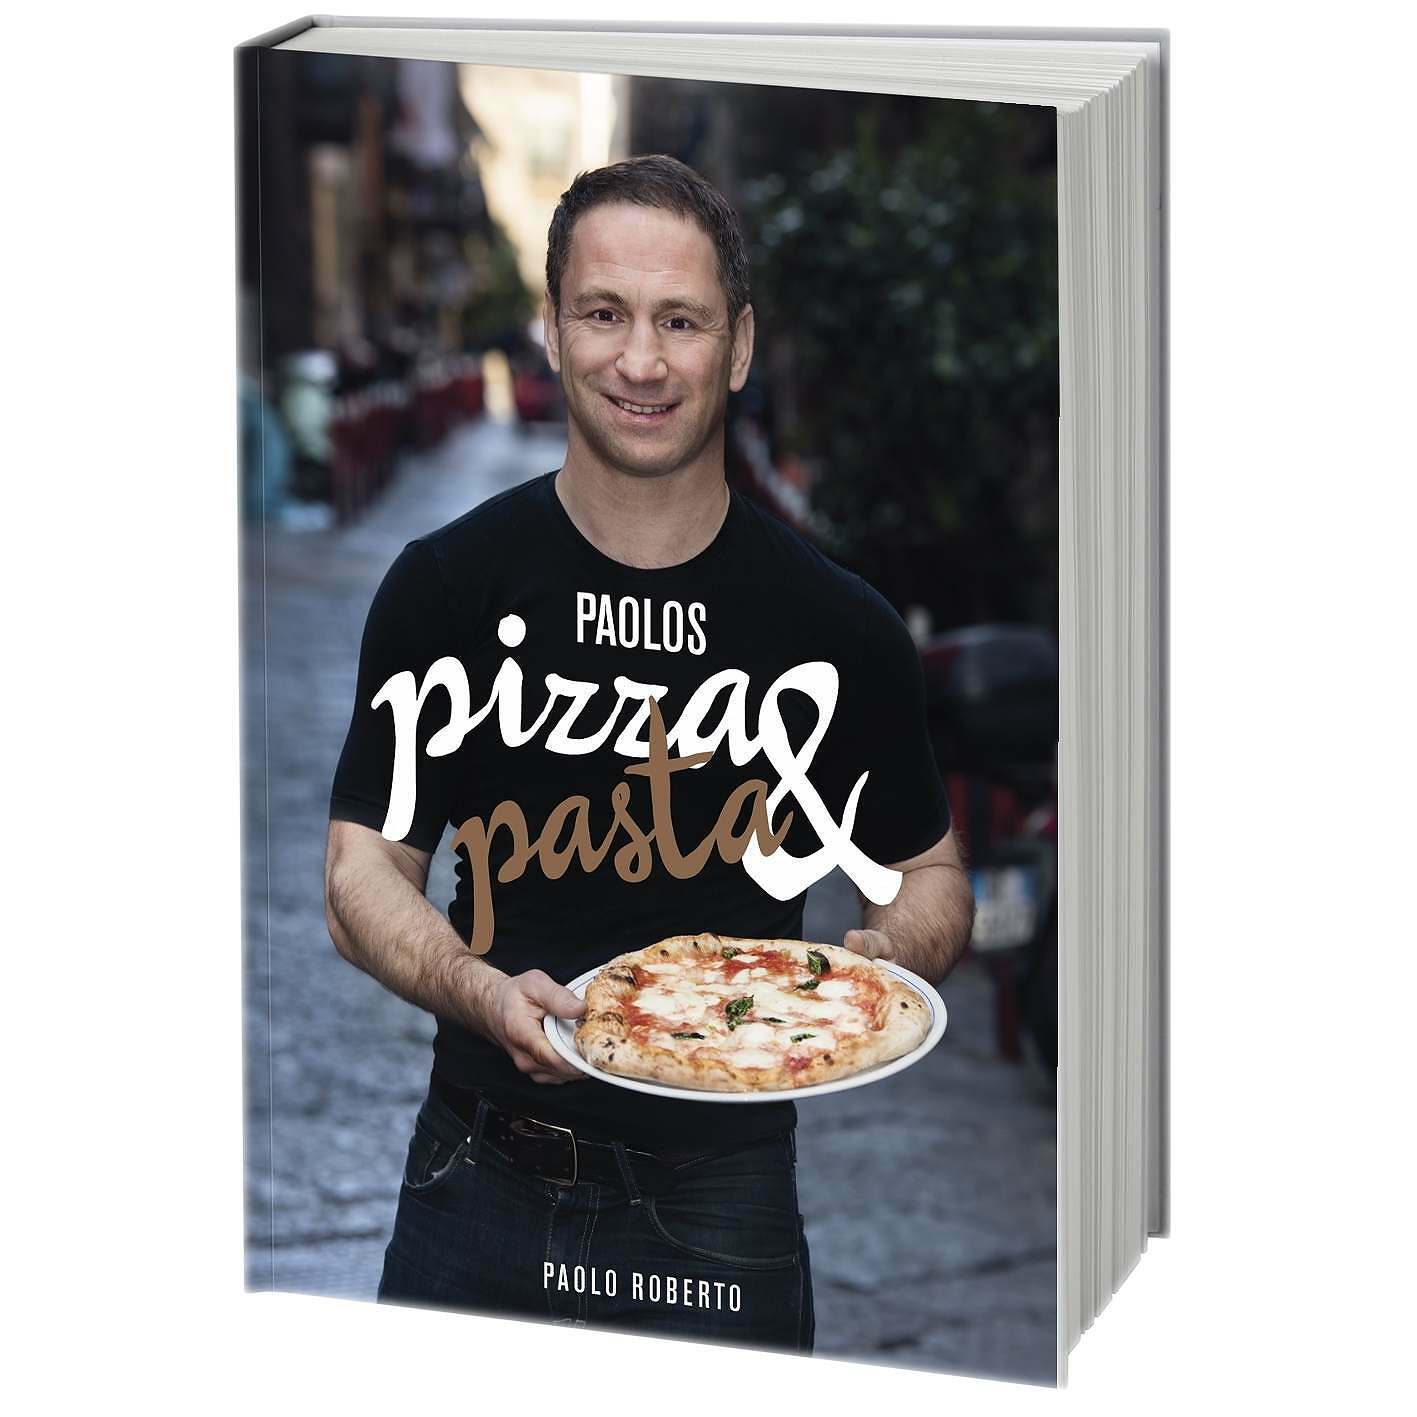 Paolos pizza & pasta - Robertos Shop